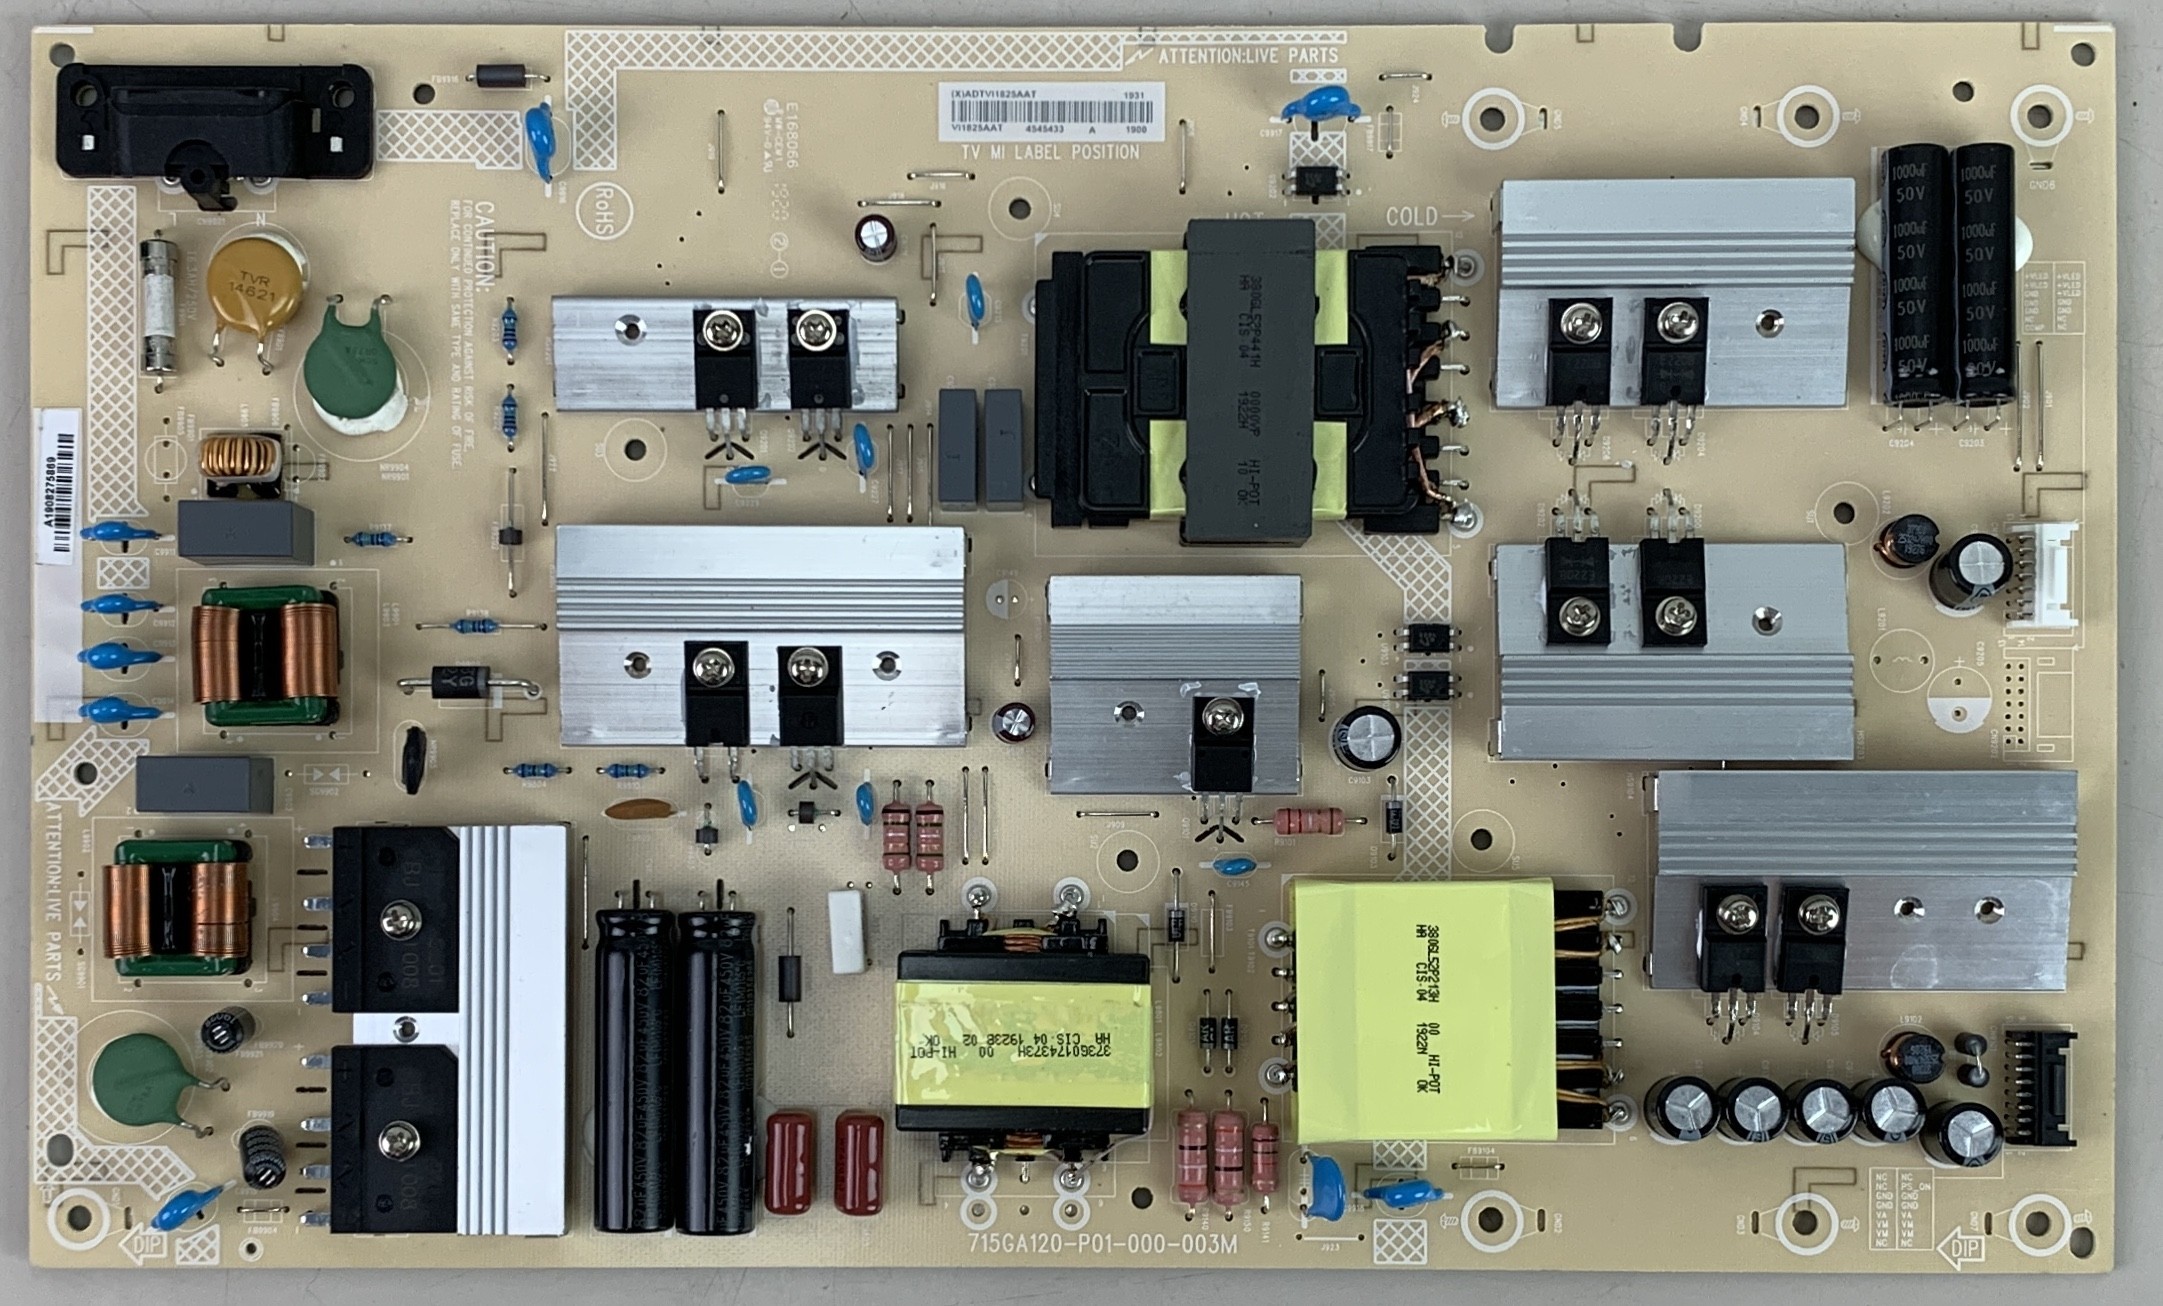 Vizio 715A120-P01-000-003M Power Board for M657-G0 TV